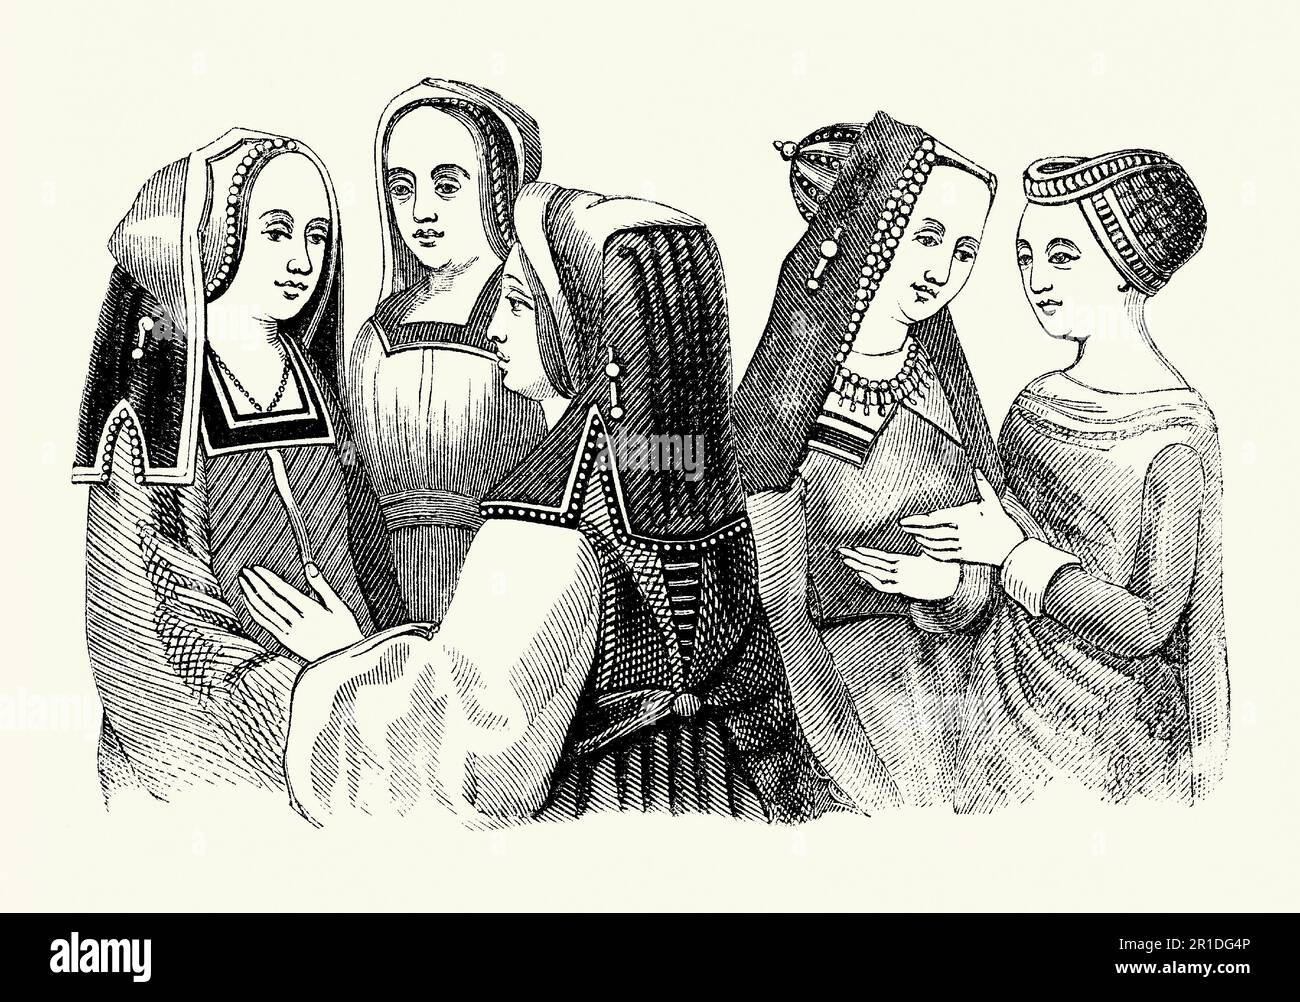 Une vieille gravure de vêtements portés par des femmes à l'époque Tudor en Angleterre. Le style de la robe date de la fin de 15th et du début de 16th siècles pendant le règne d'Henri VII (1485–1509). Ce qui est remarquable ici dans la tenue des femmes sont ce qui est porté sur la tête. Ces capuches brodées – qui sont parfois descendées sous le niveau des épaules – cachaient la plupart des cheveux. Les cheveux visibles sont tressés. Les robes extérieures étaient de longueur au sol avec un corsage de coupe carrée et une taille haute. Cette tenue aurait été portée par ceux en société avec de l'argent, le génie débarqué, la noblesse et d'autres liés à la cour royale. Banque D'Images